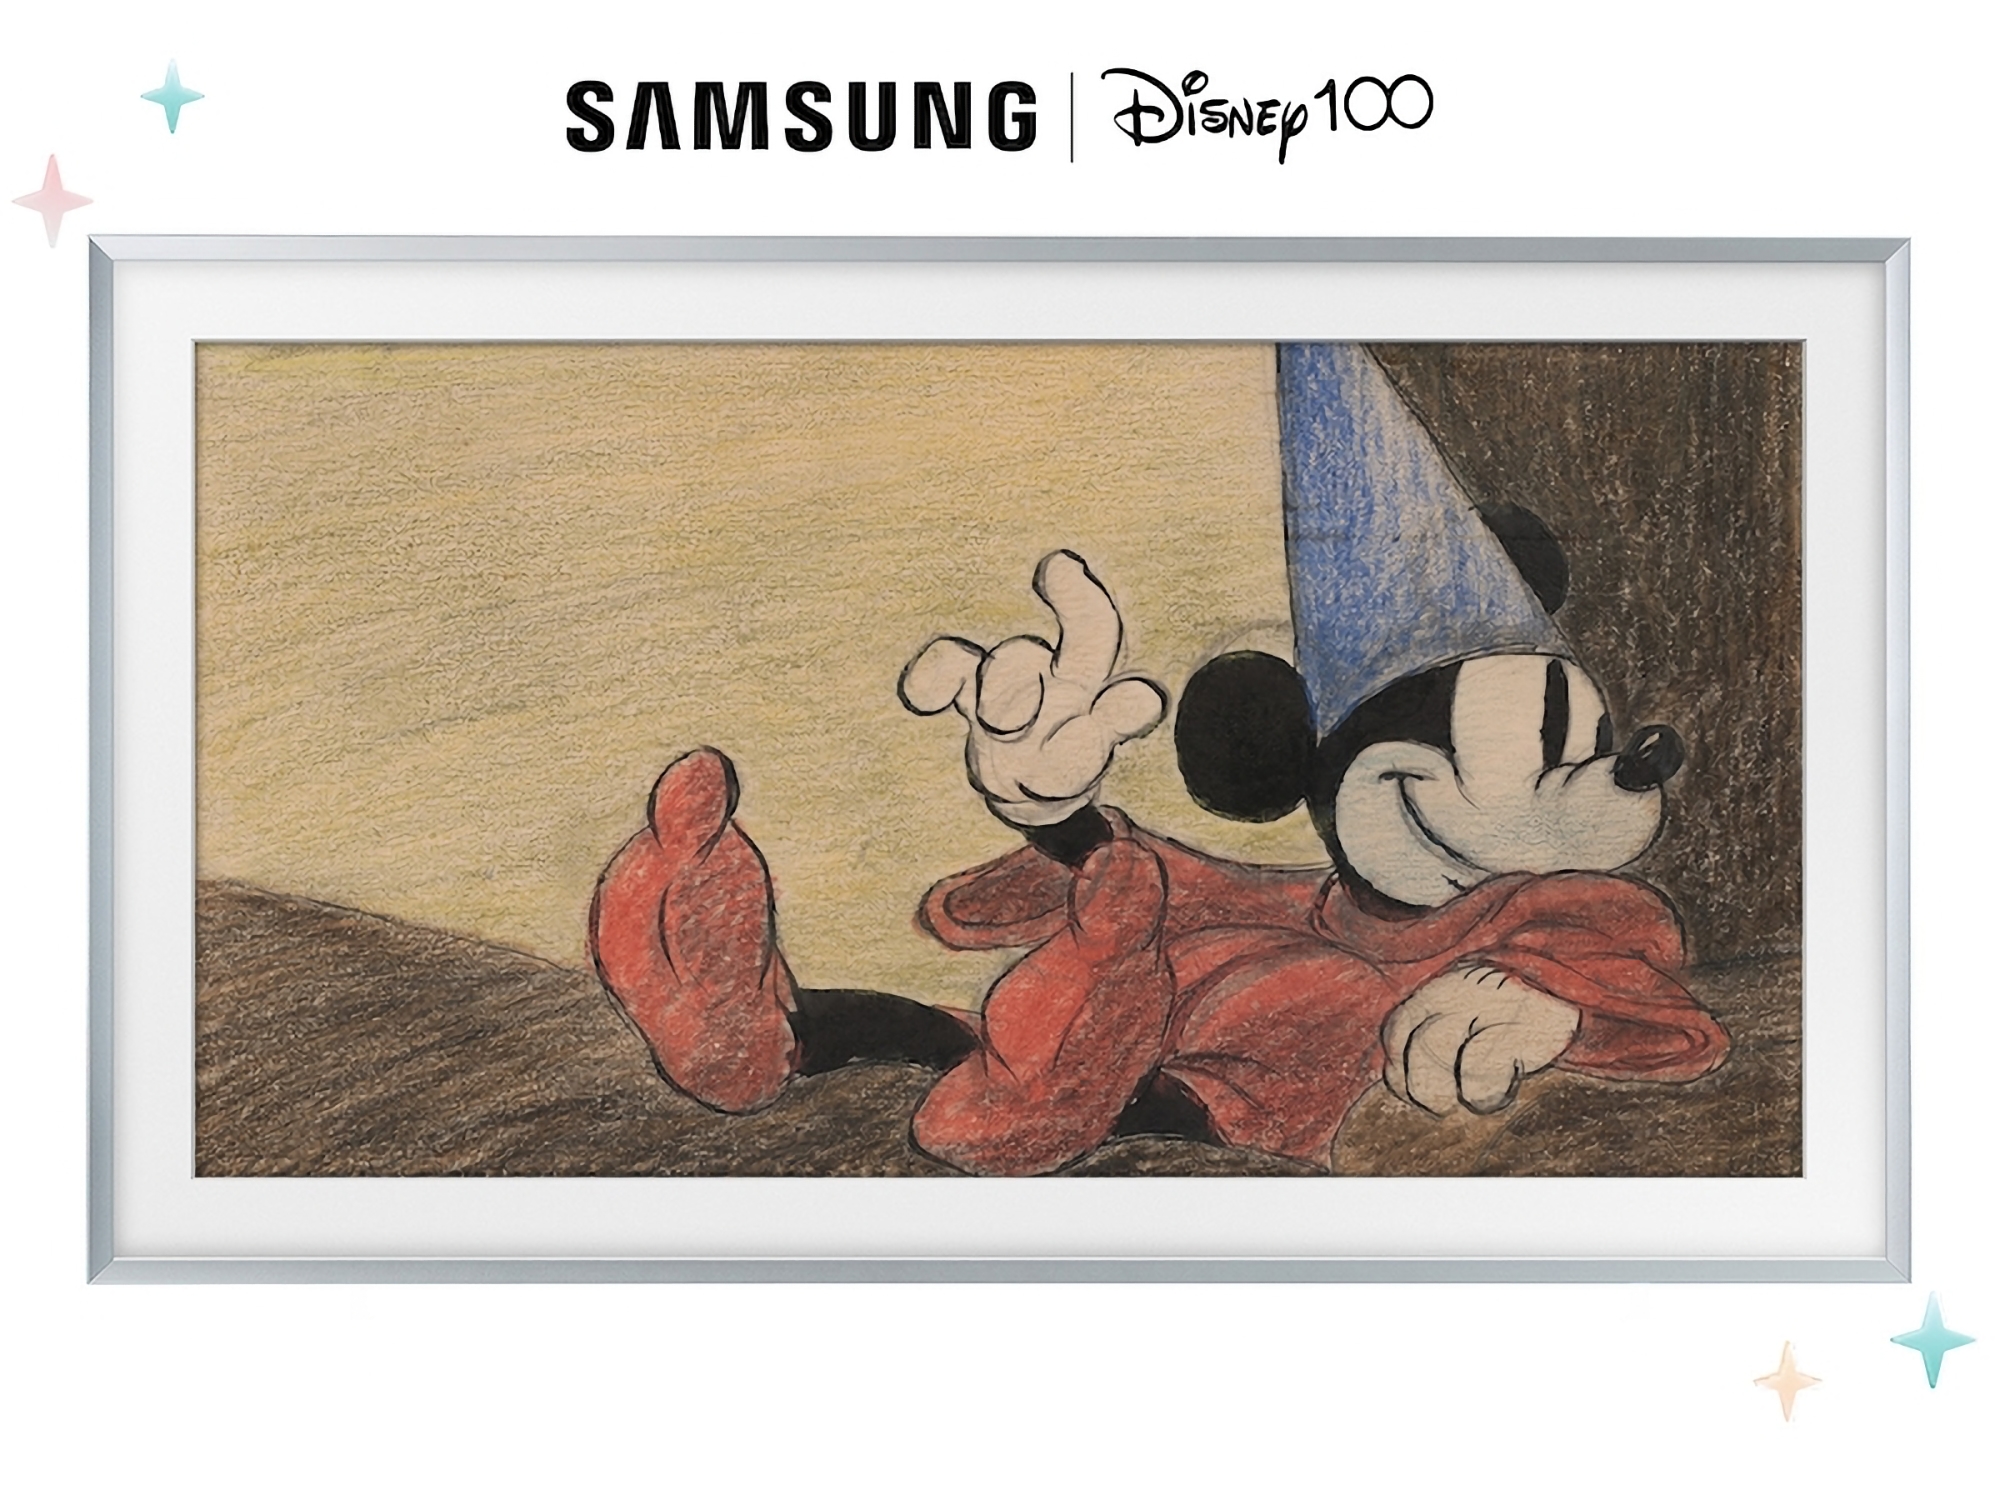 Samsung a dévoilé une gamme de téléviseurs Frame en édition limitée pour célébrer le 100e anniversaire de la Walt Disney Company.